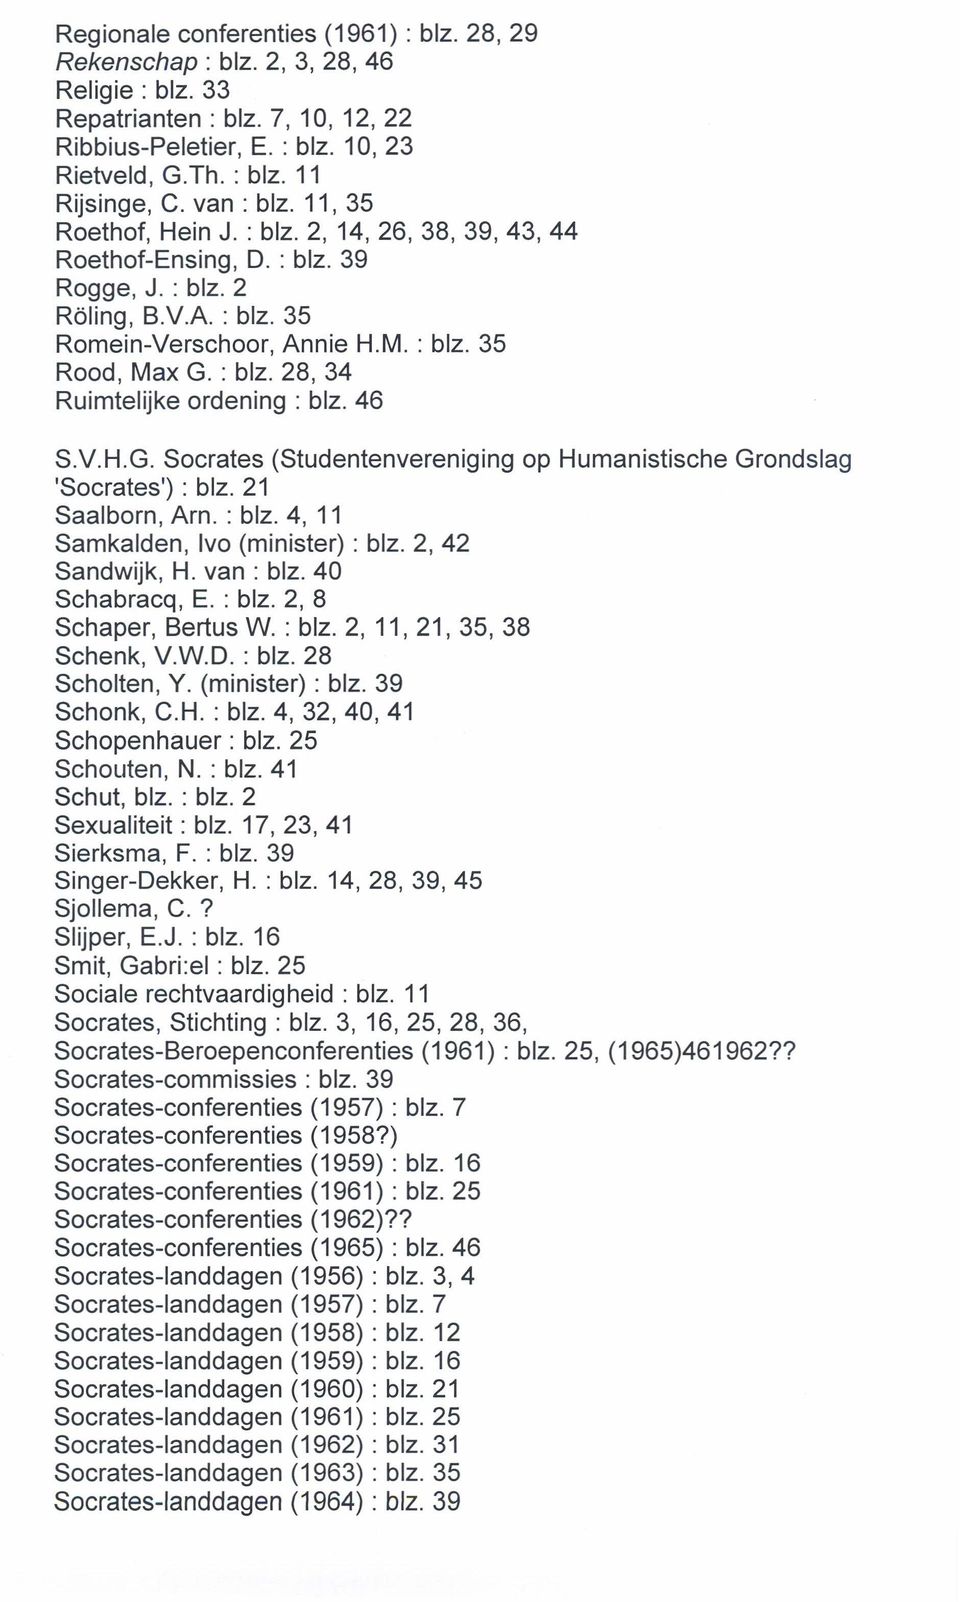 46 SV.H.G. Socrates (Studentenvereniging op Humanistische Grondslag 'Socrates') : blz. 21 Saalborn, Arn. : blz. 4, 11 Samkalden, Ivo (minister) : blz. 2, 42 Sandwijk, H. van: blz. 40 Schabracq, E.